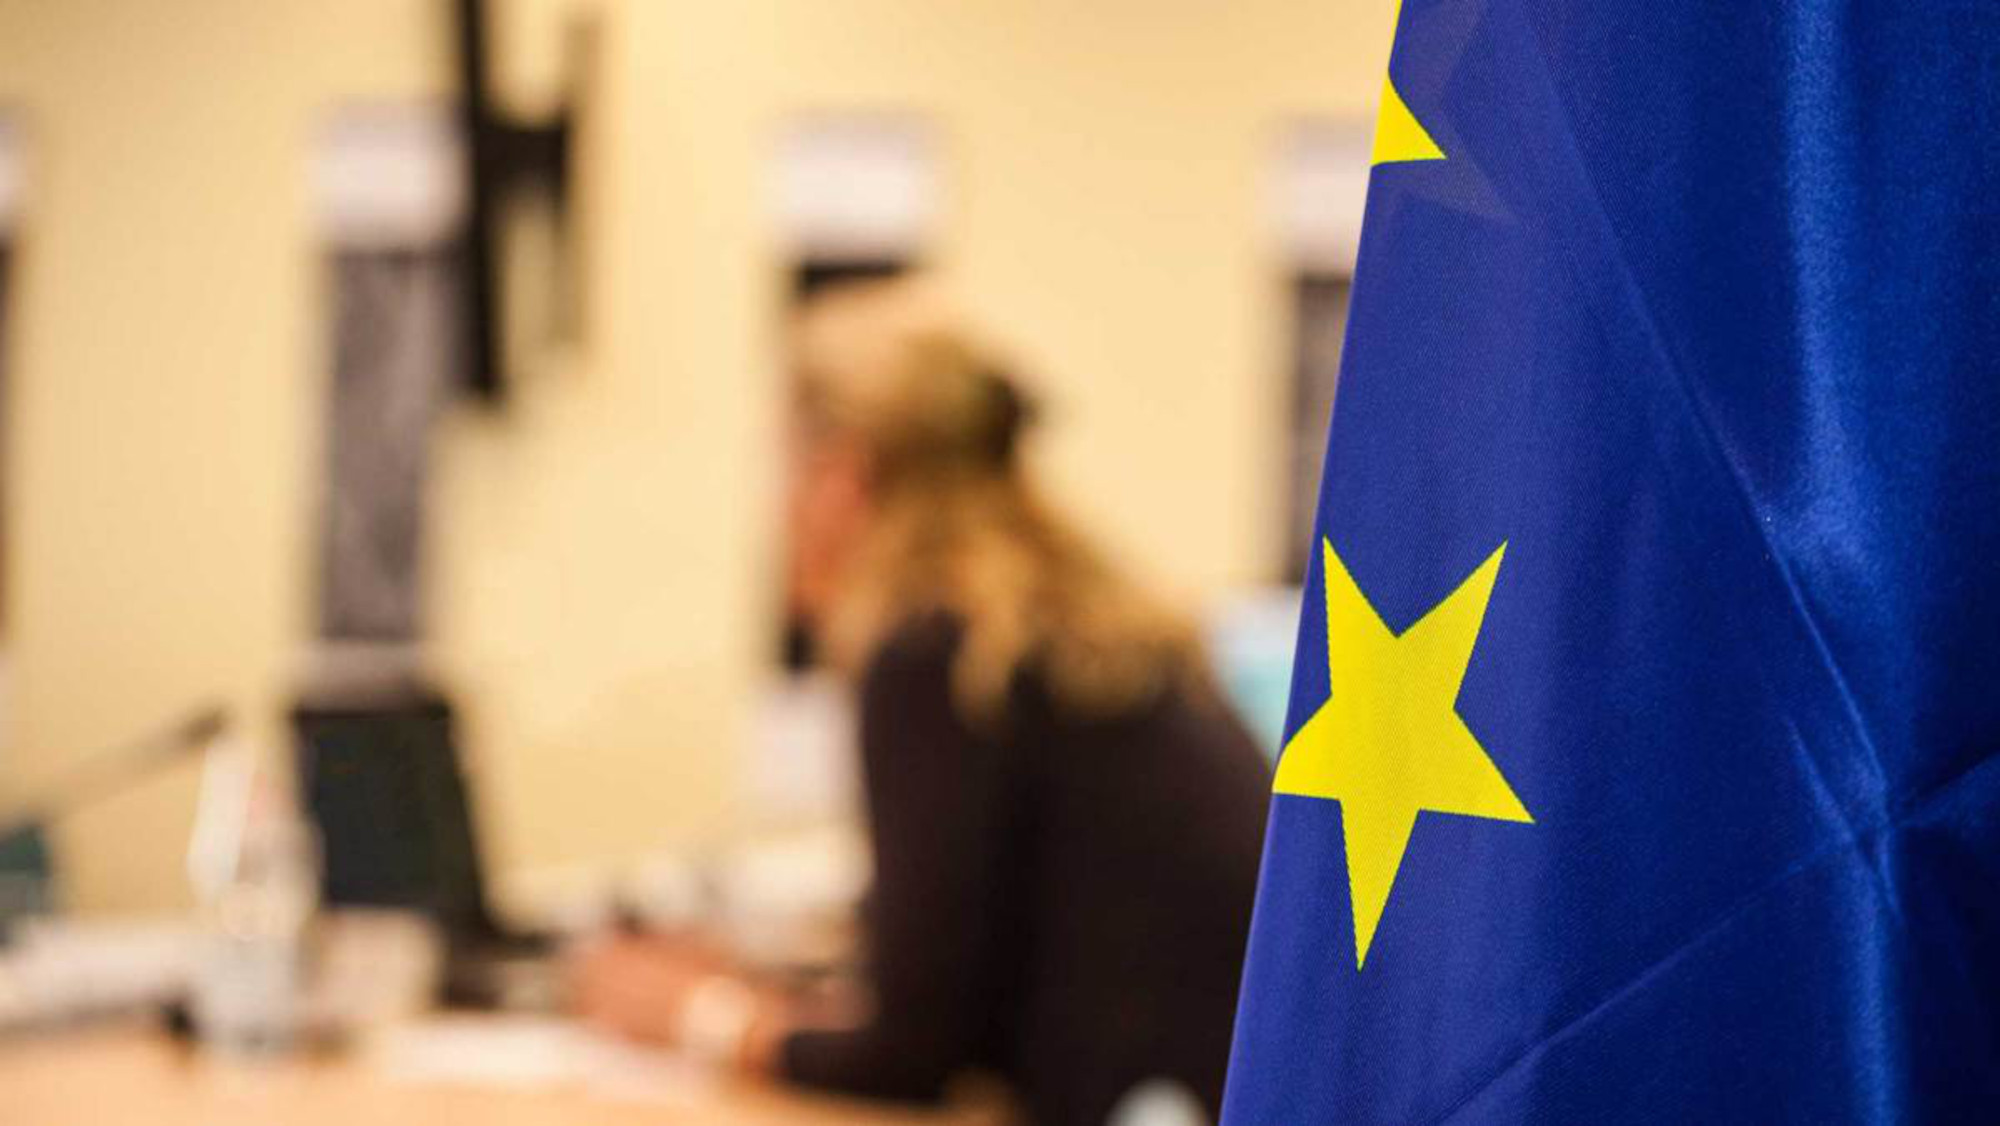 Ein Teil der EU Flagge ist im Vordergrund fokussiert, im Hintergrund sitzt eine Person am Schreibtisch und arbeitet am Laptop.